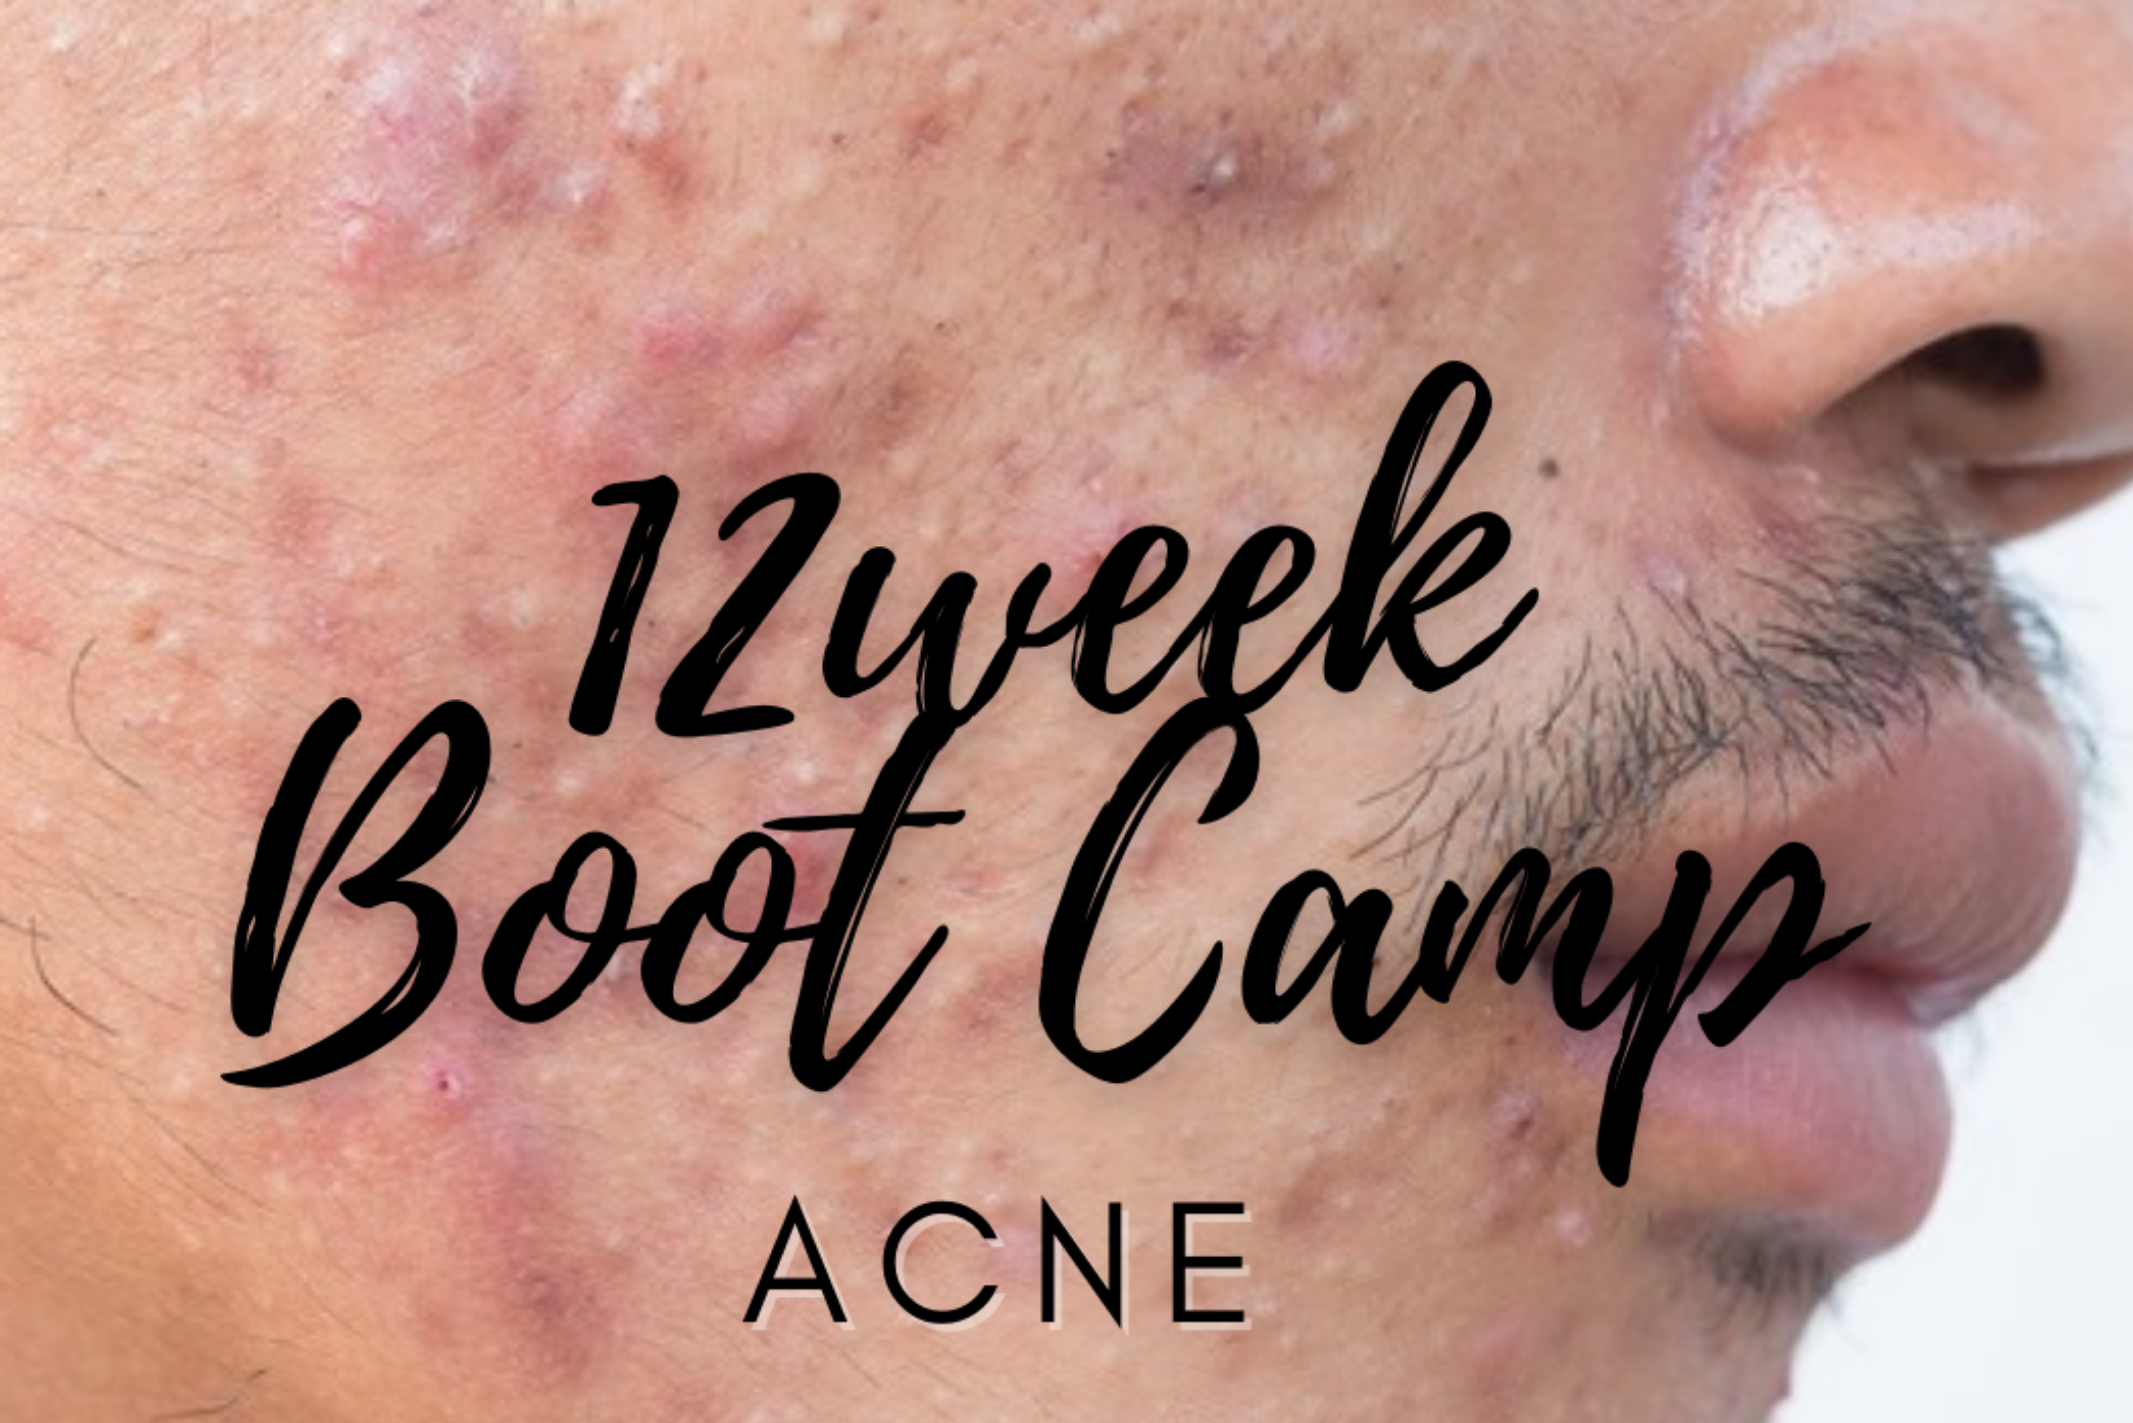 Acne 12 week clear skin